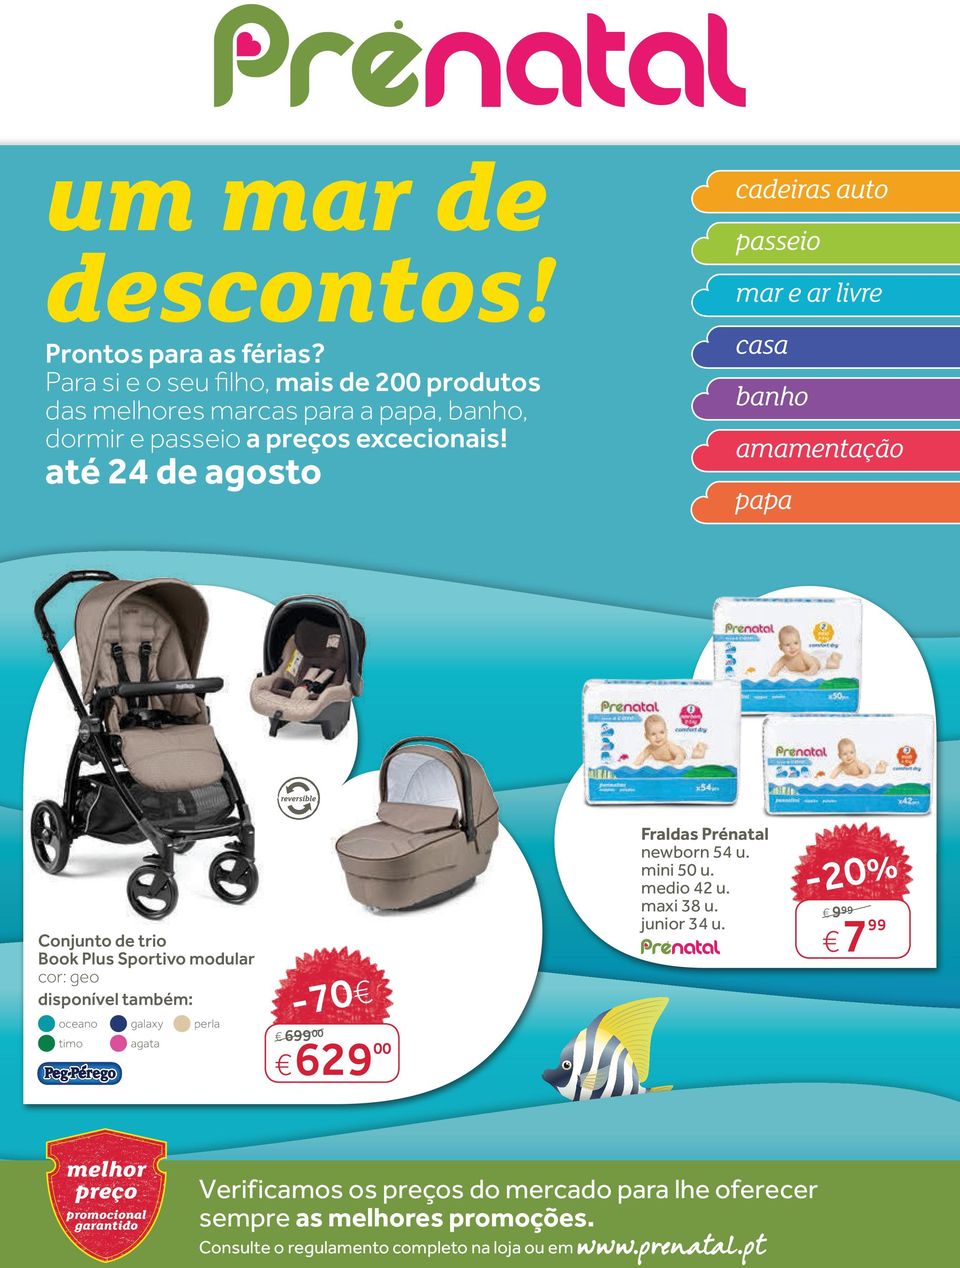 20% -70. até 24 de agosto. cadeiras auto passeio mar e ar livre casa banho  amamentação papa - PDF Download grátis